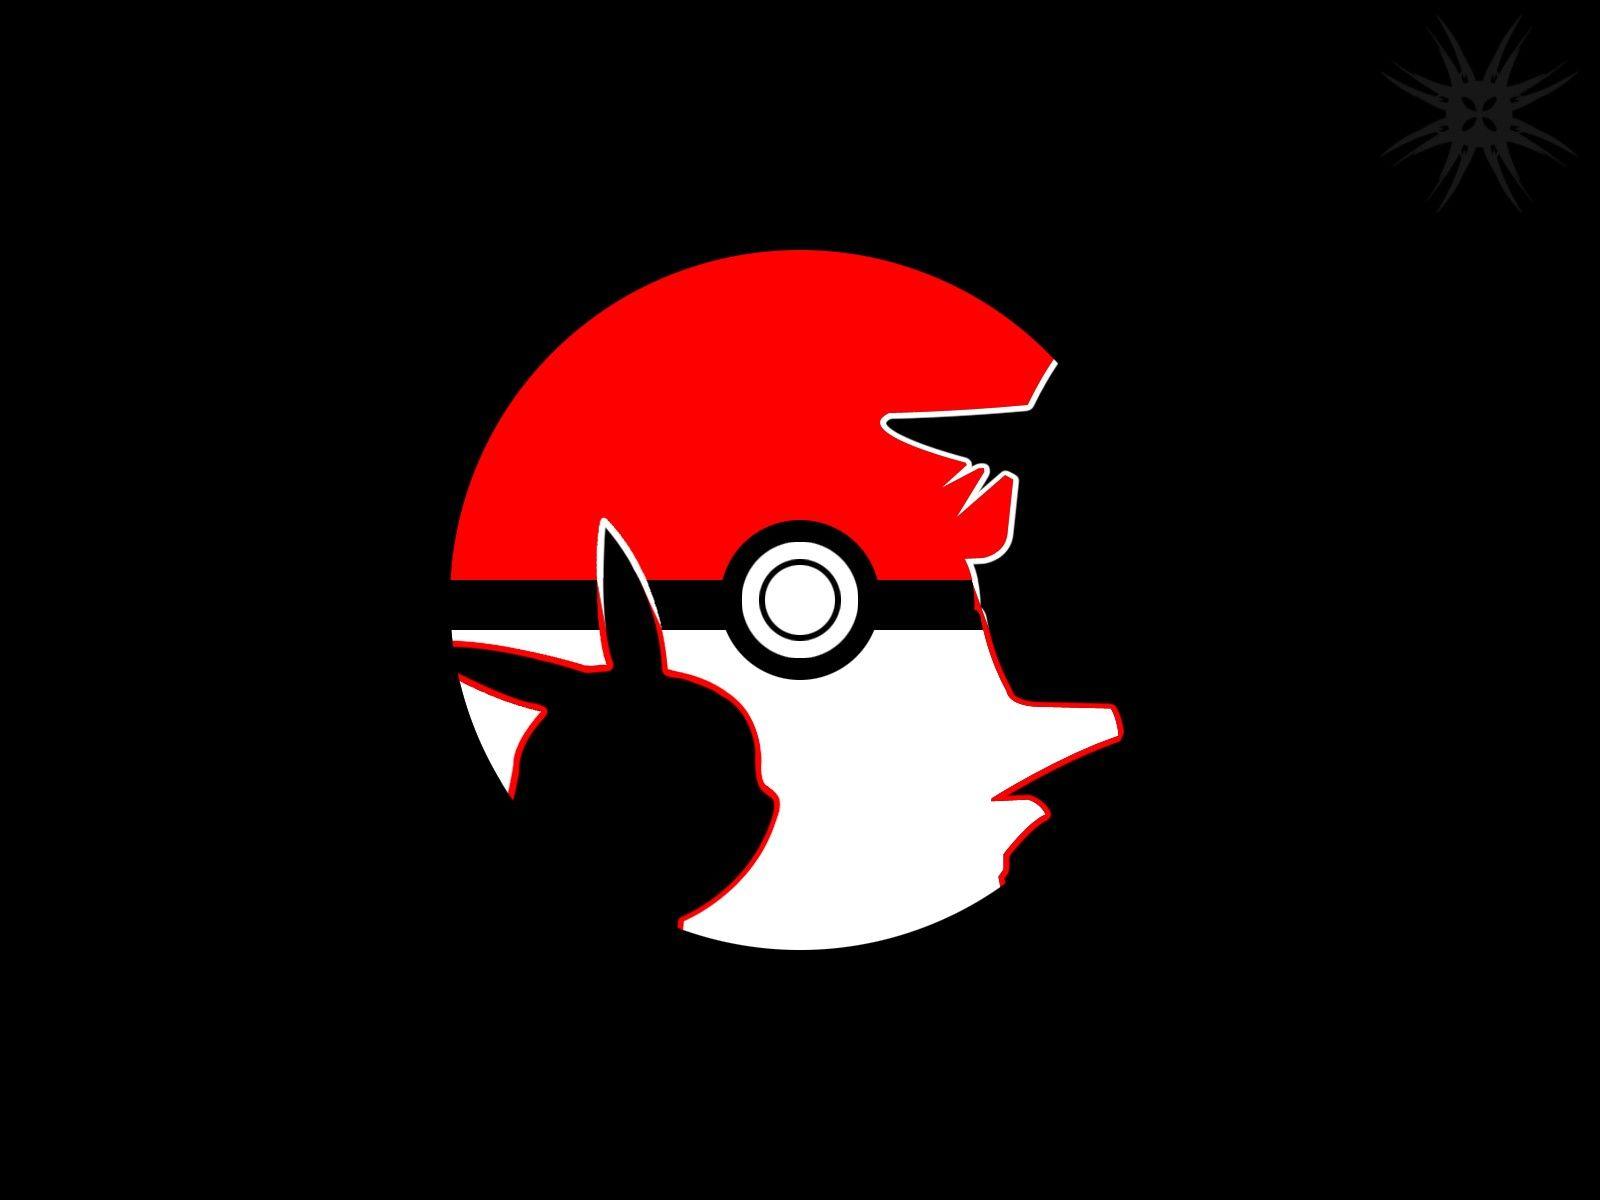 Red (Pokémon) 1080P, 2K, 4K, 5K HD wallpapers free download